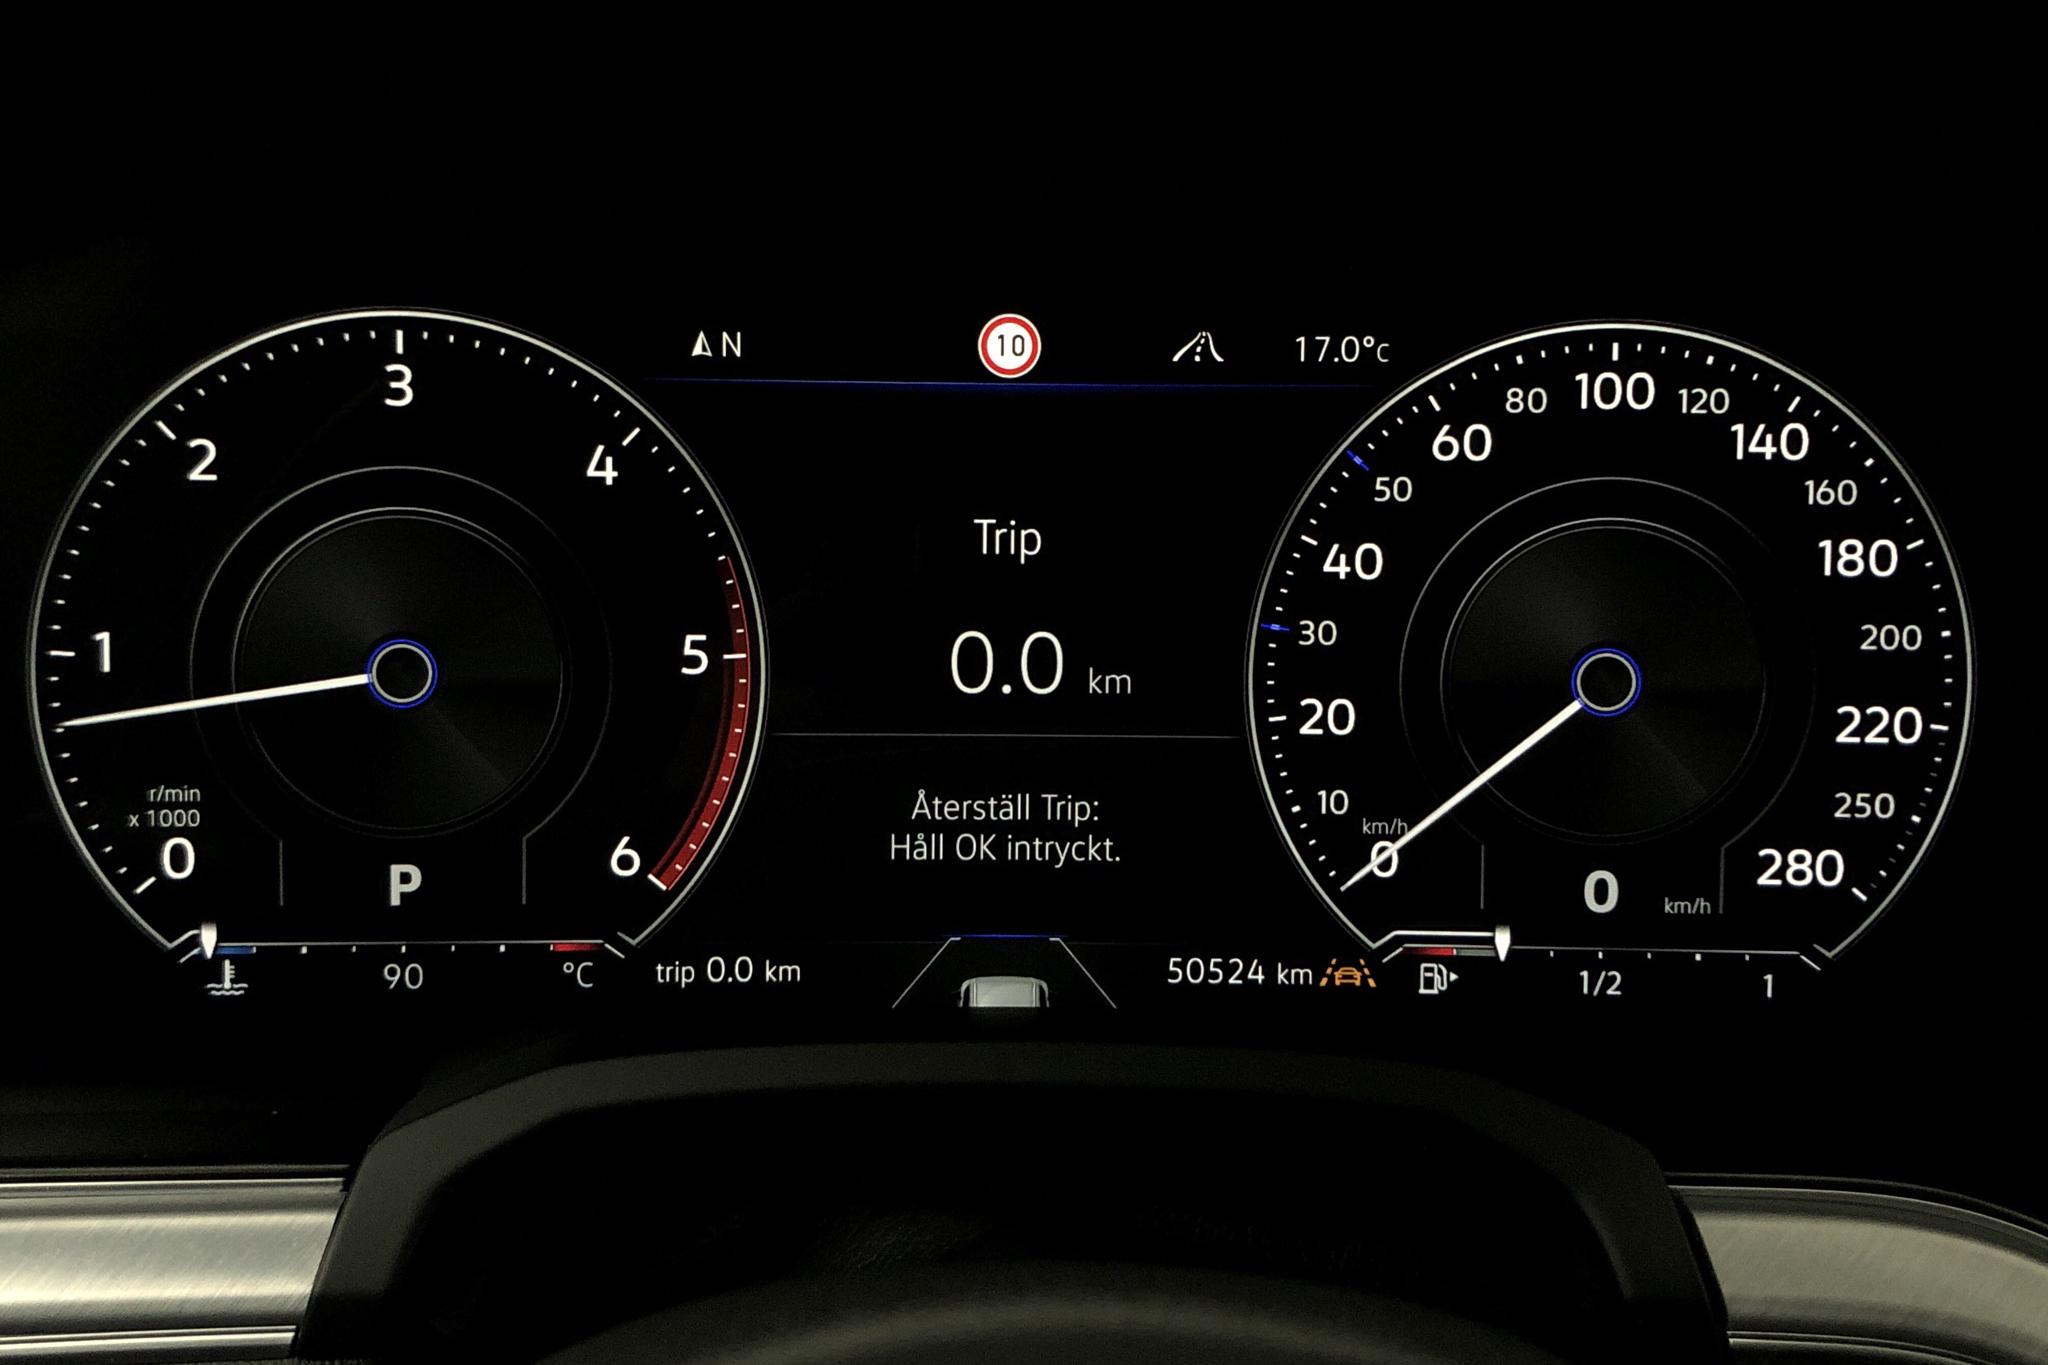 VW Touareg V6 TDI 4Motion (286hk) - 50 530 km - Automatic - gray - 2019